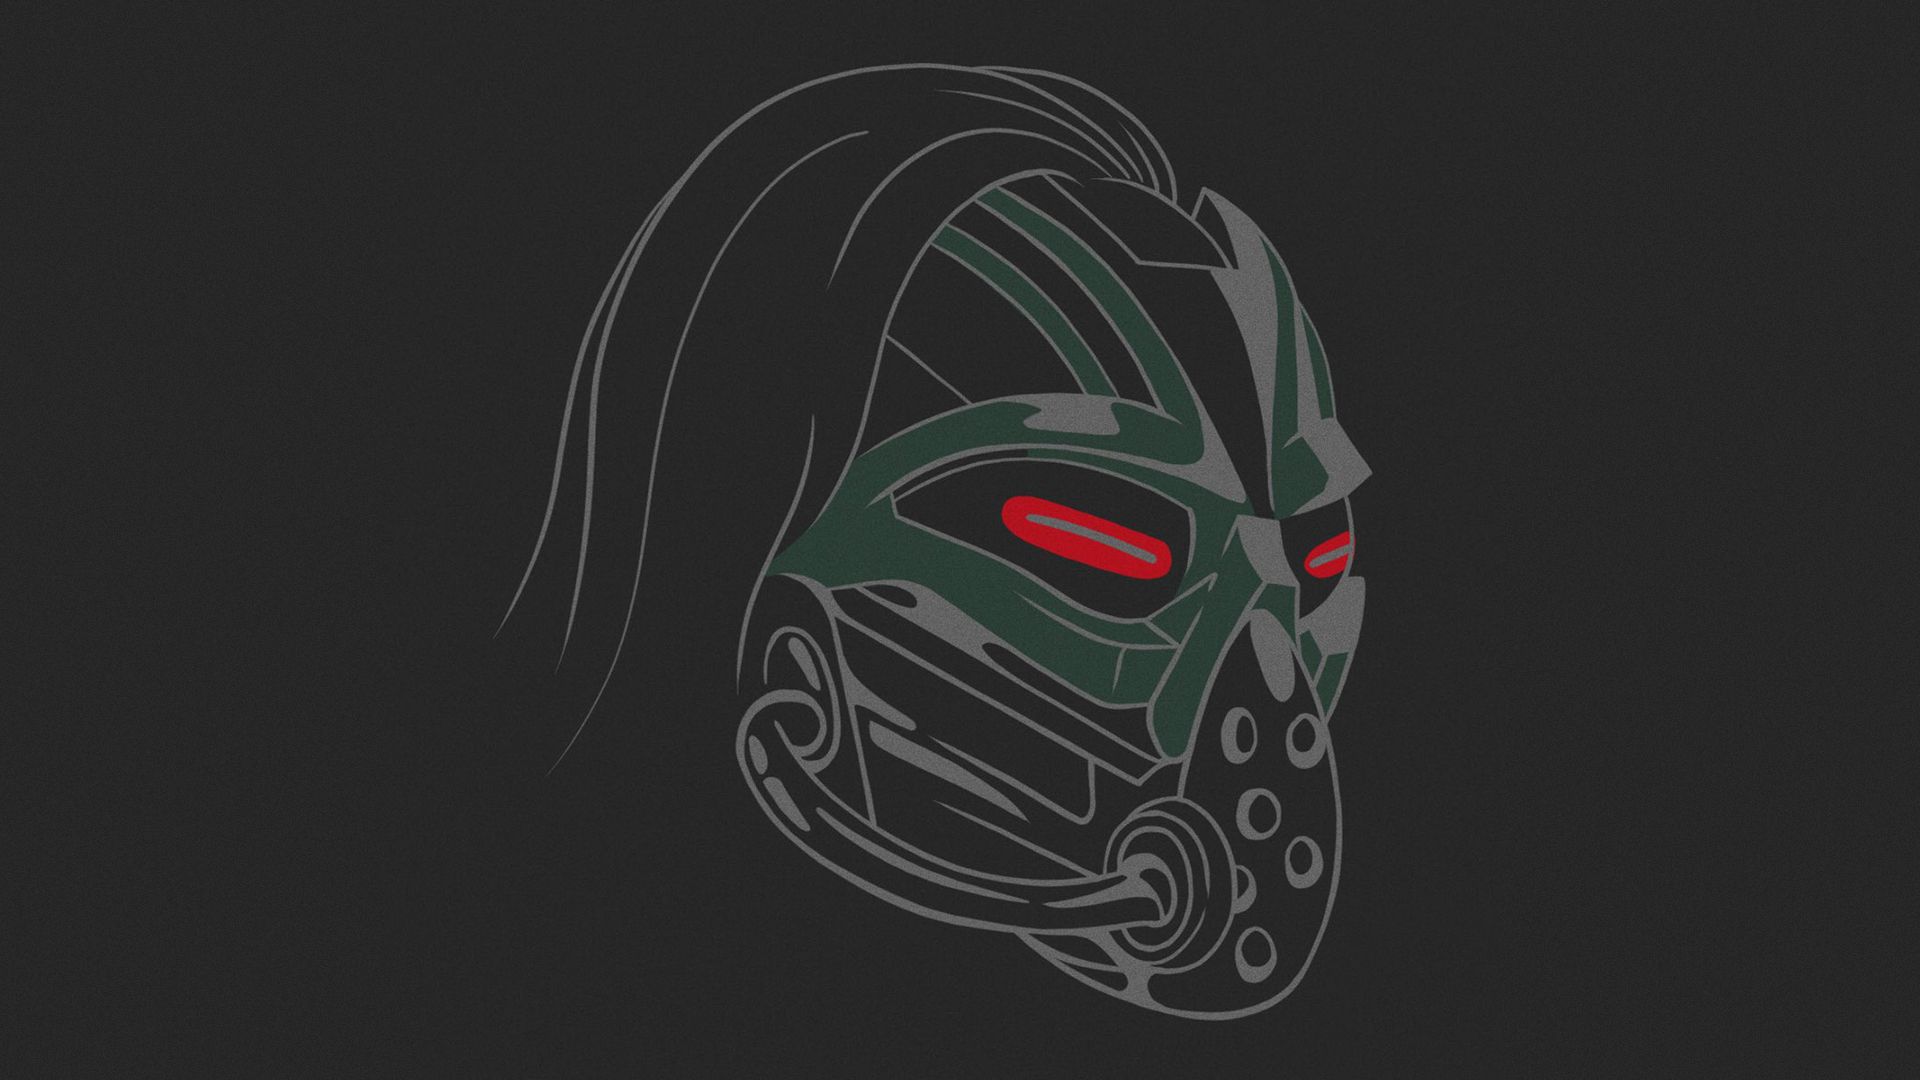 Mortal Kombat background's head Mortal Kombat games, fan site!